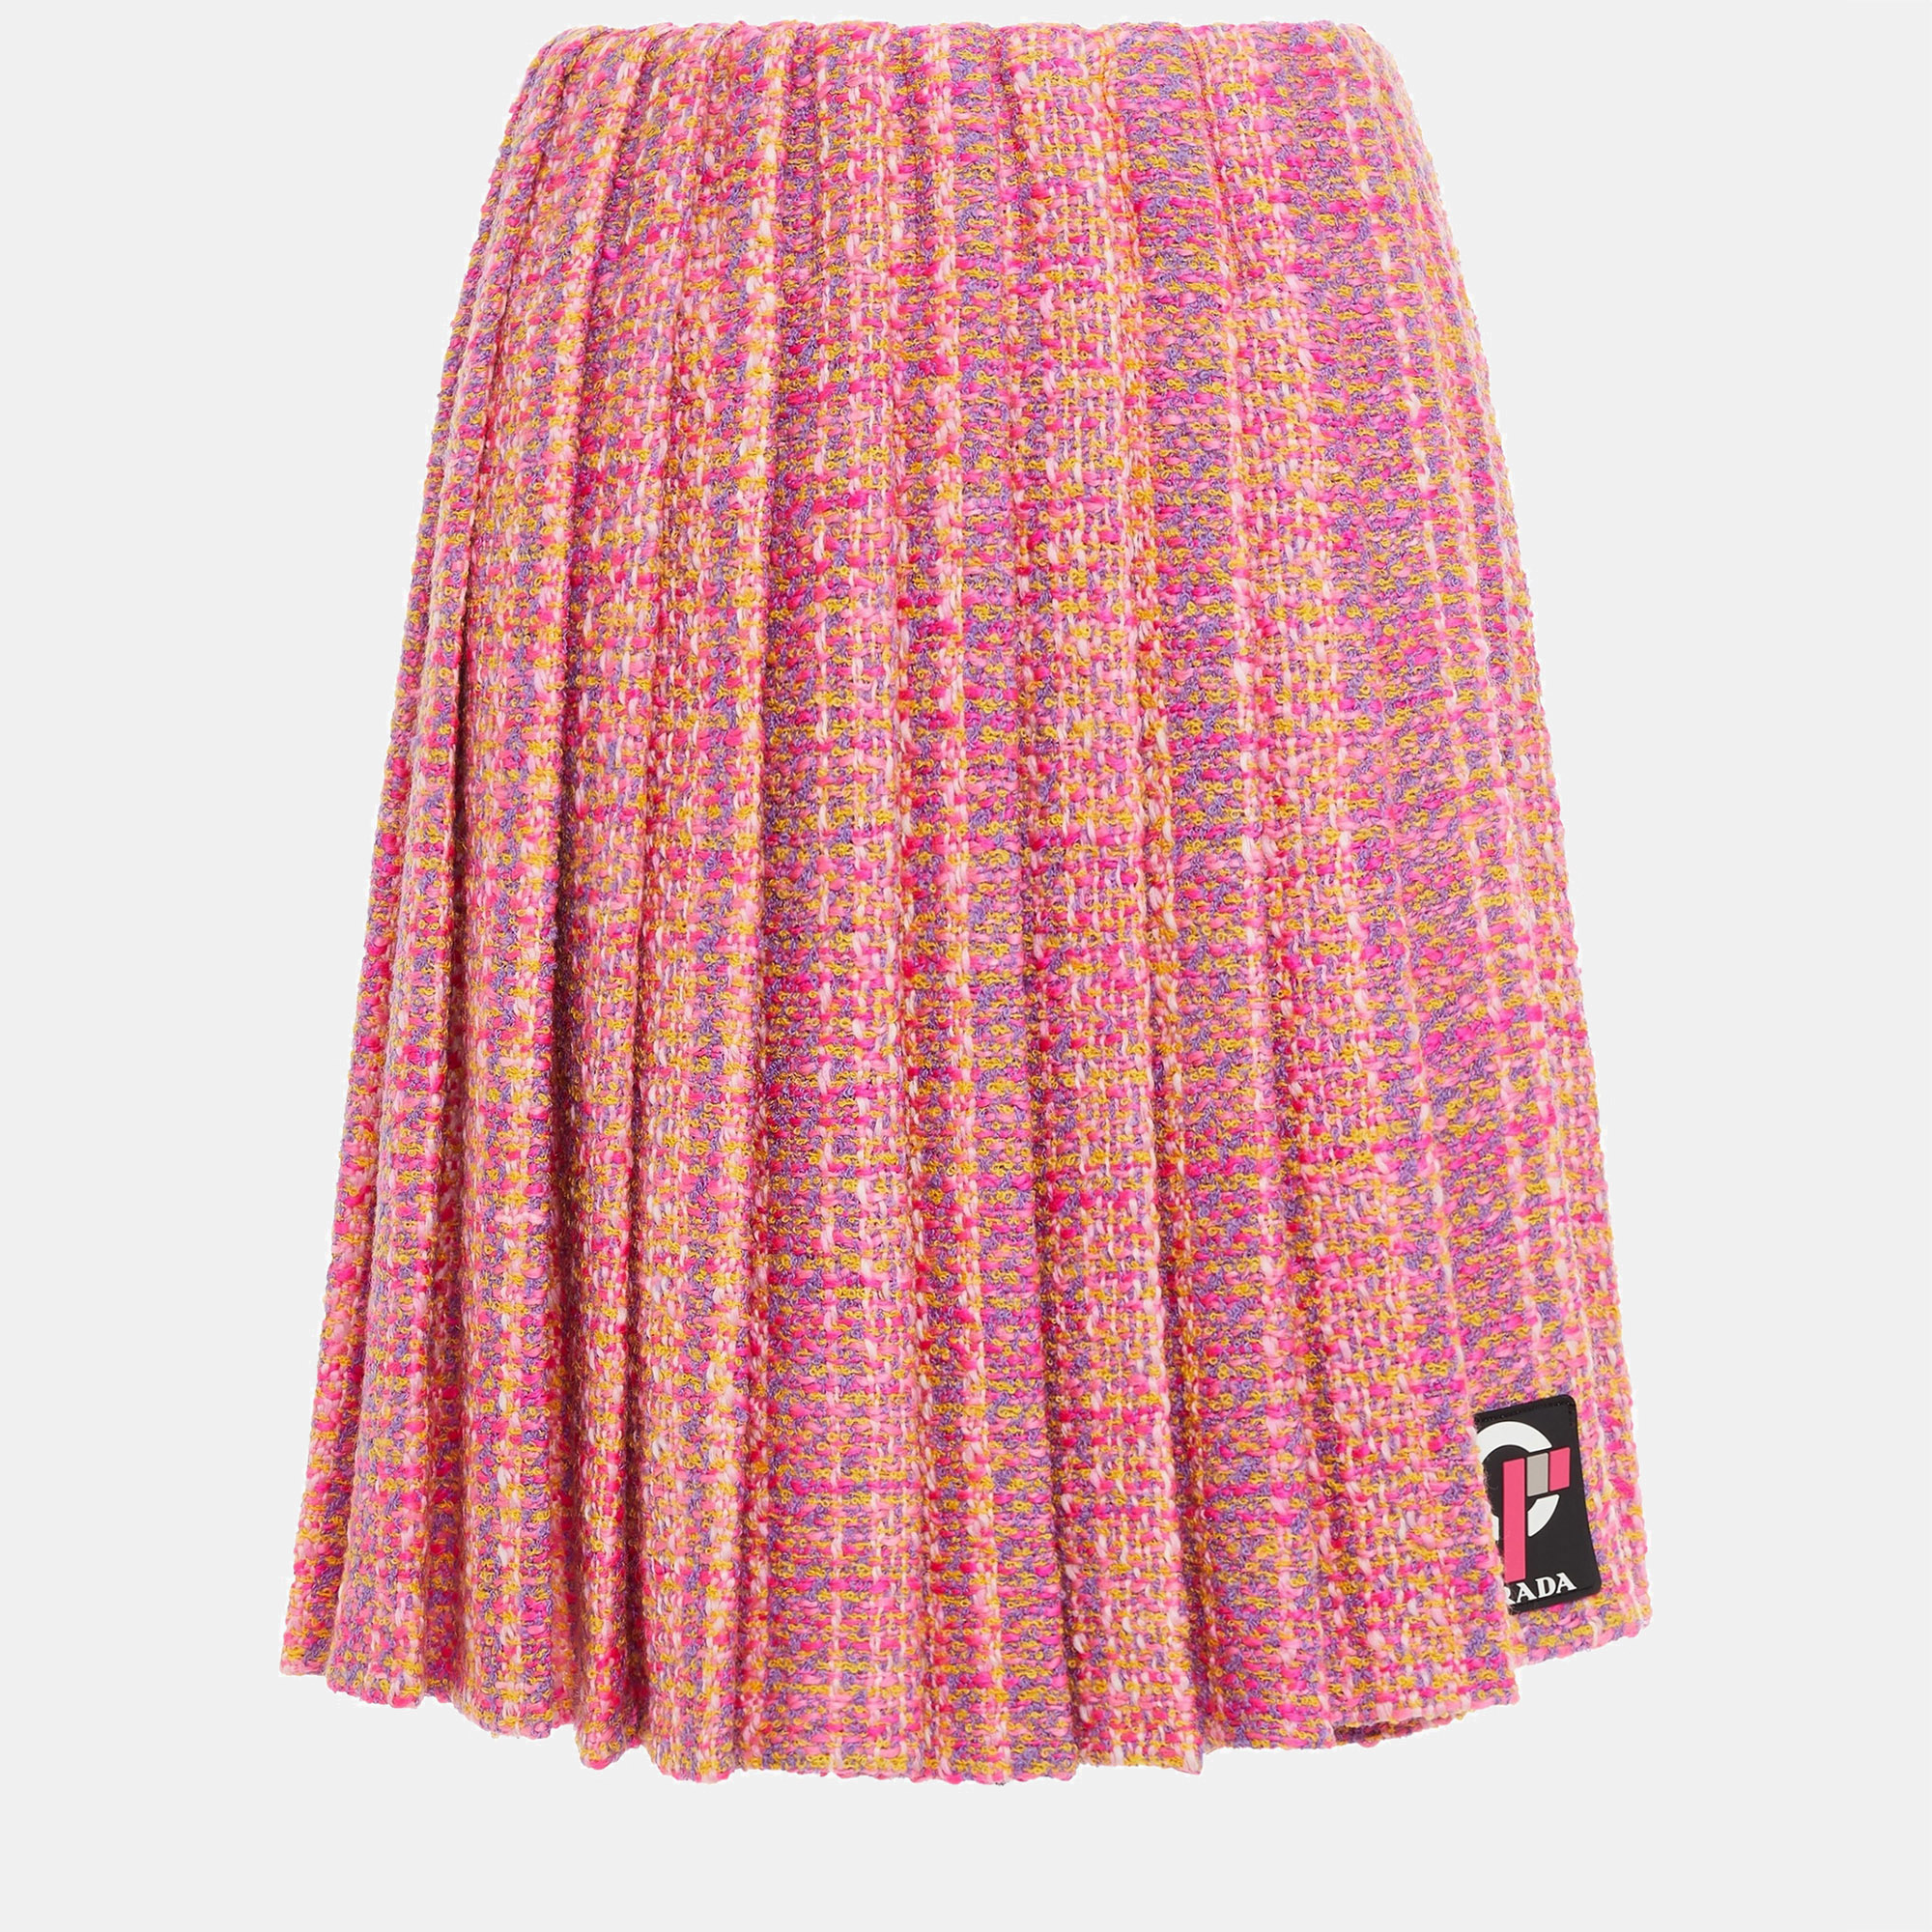 Prada virgin wool knee length skirt 40